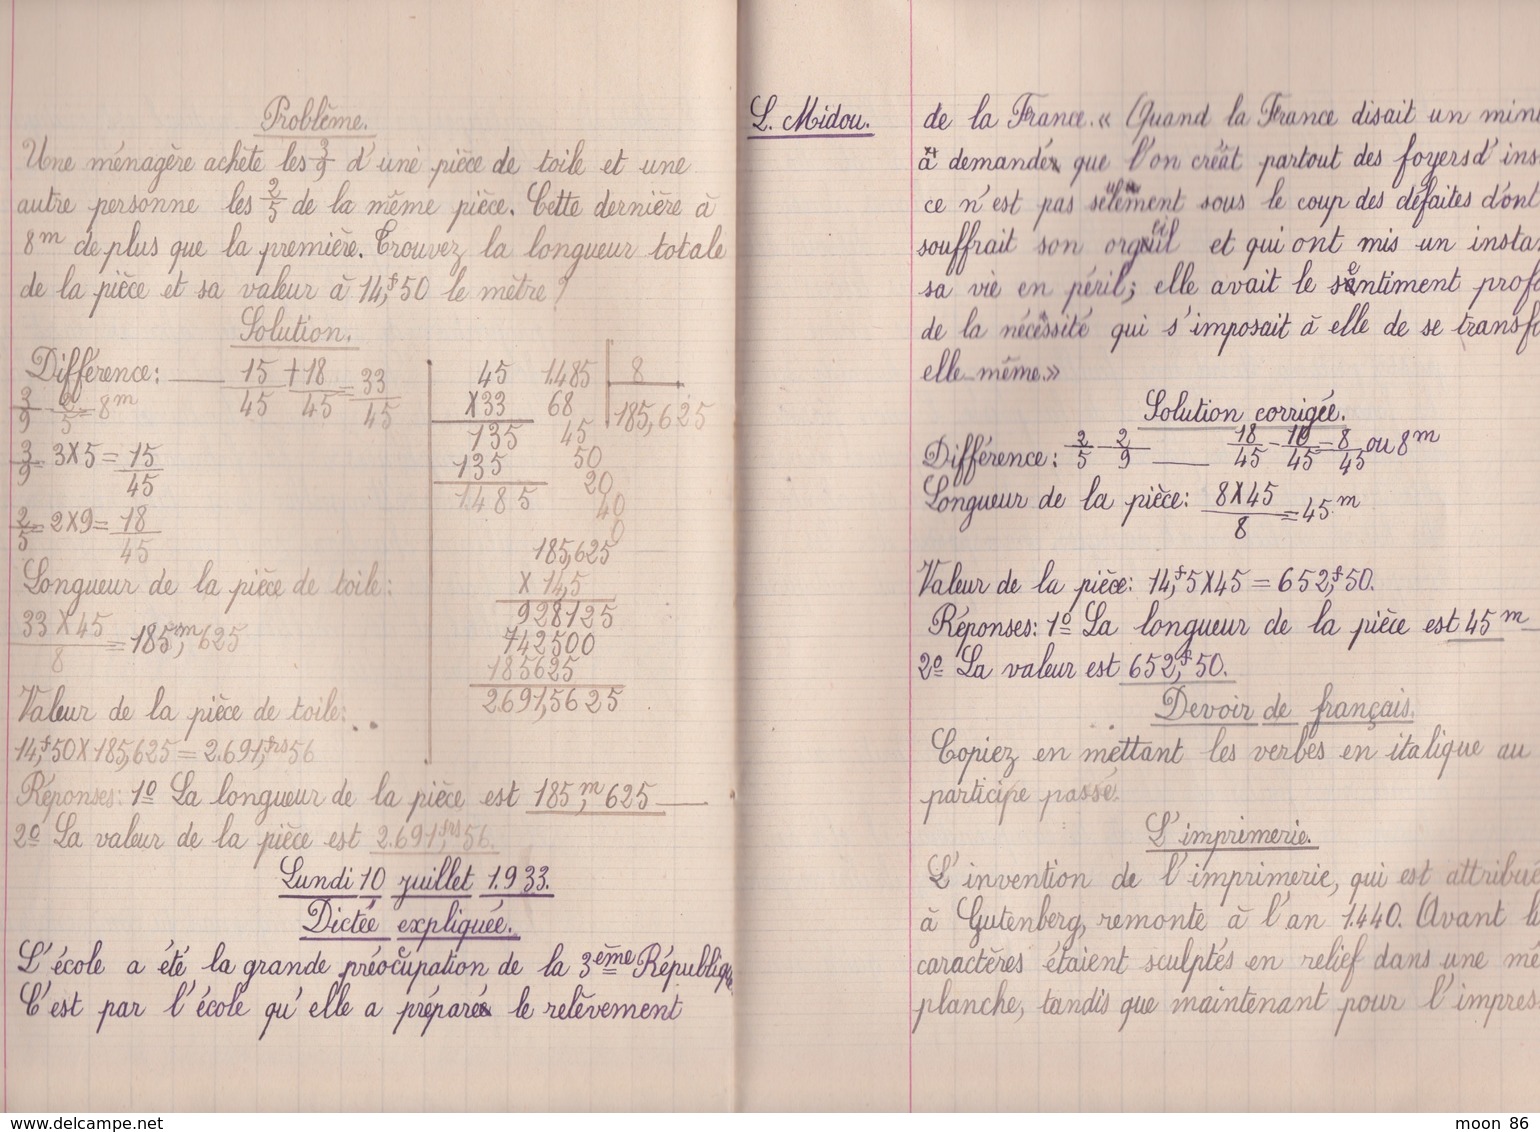 ANCIEN CAHIER DE DEVOIRS - ILLUSTRATION VILLE DE PARIS - FOURNITURE SCOLAIRES GRATUITES - ECOLE PRIMAIRE COMMUNALE 1933 - Protège-cahiers